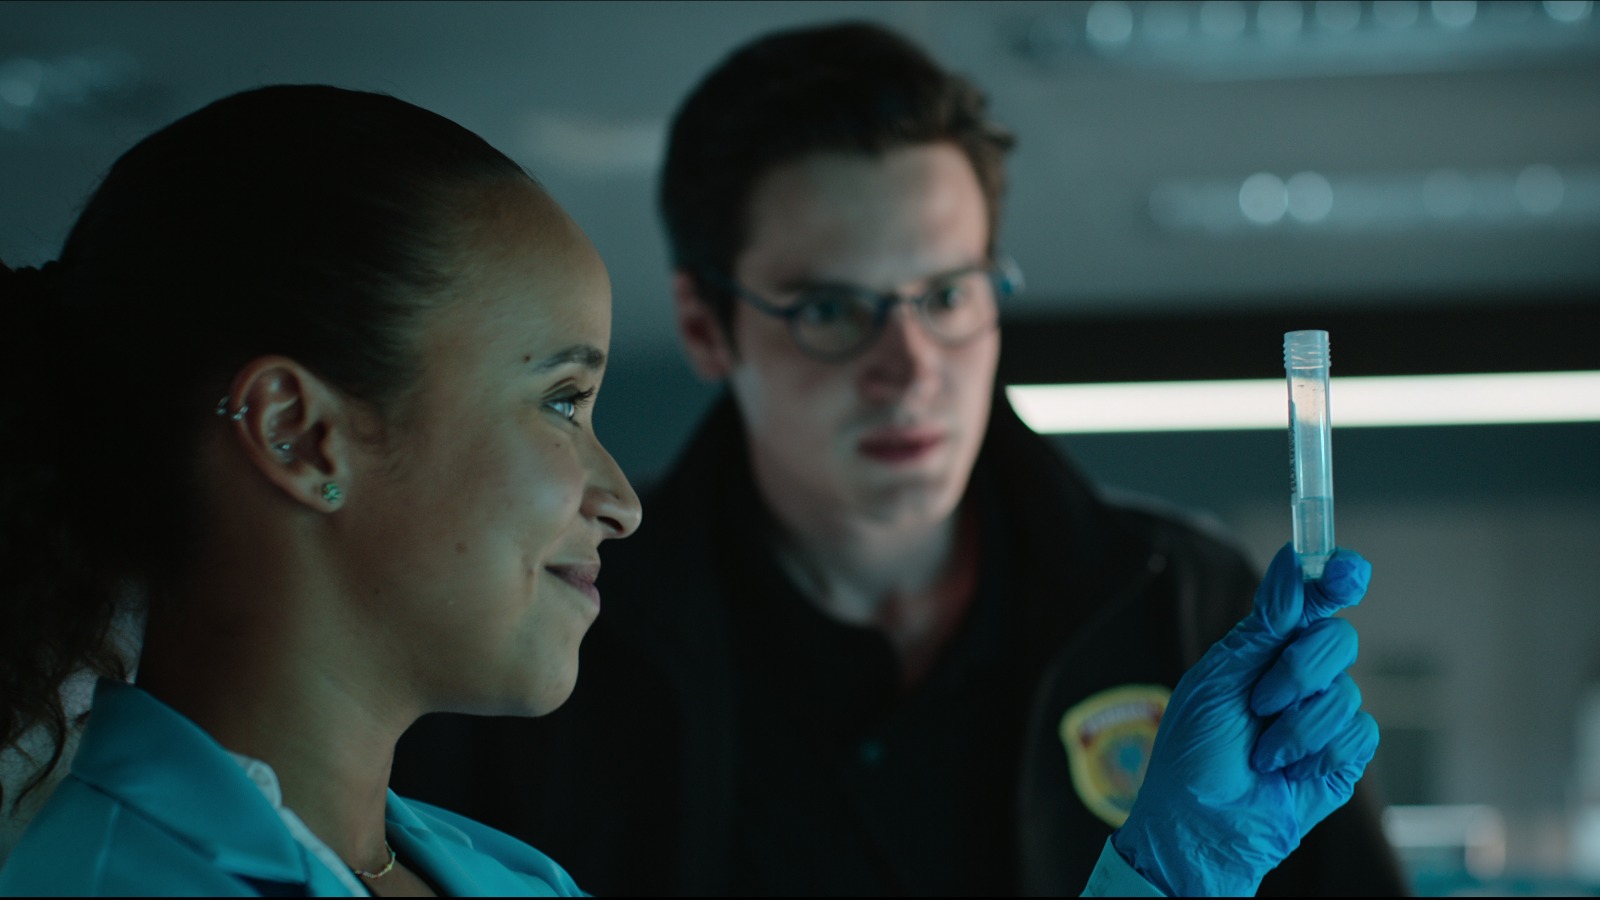 DNA do Crime, primeira série brasileira de ação policial da Netflix, estreia  em 14 de novembro - About Netflix